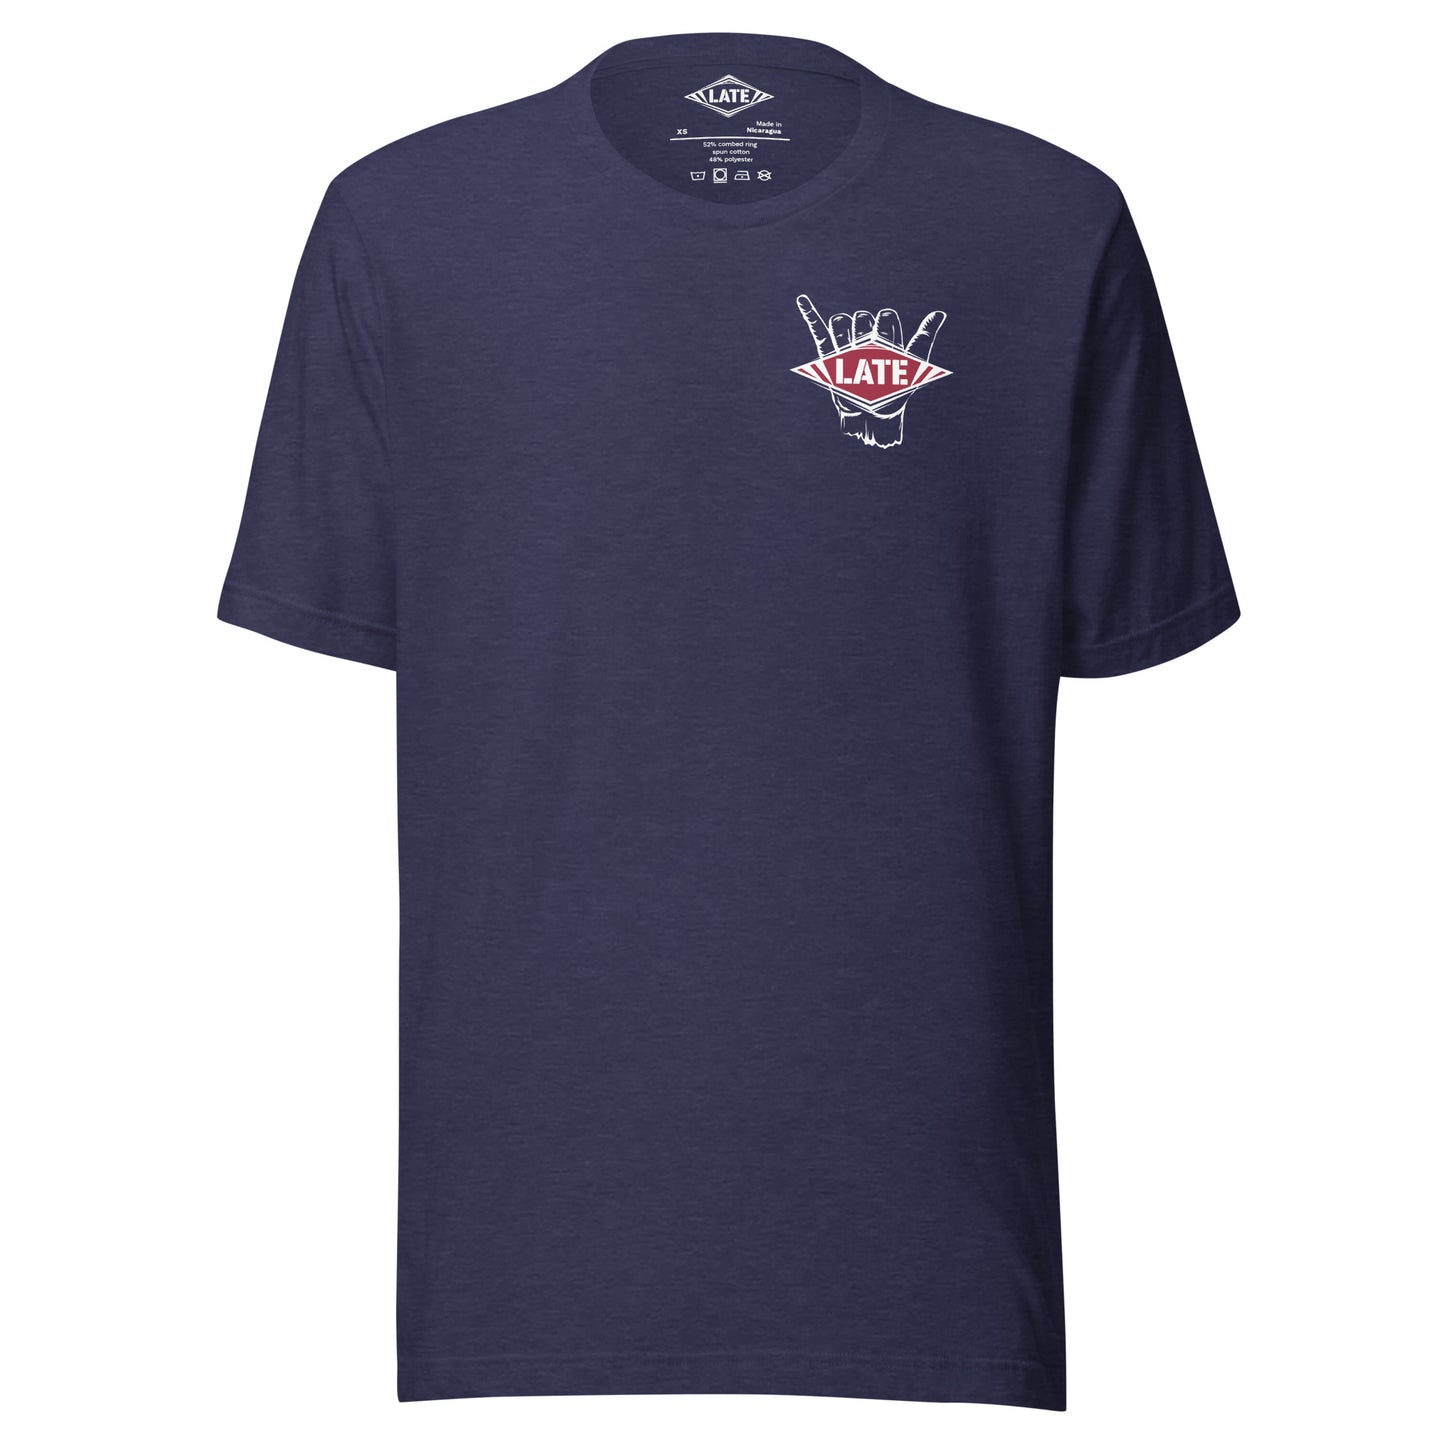 T-Shirt surfing main shaka avec le logo Late face avant t-shirt unisex couleur bleu nuit